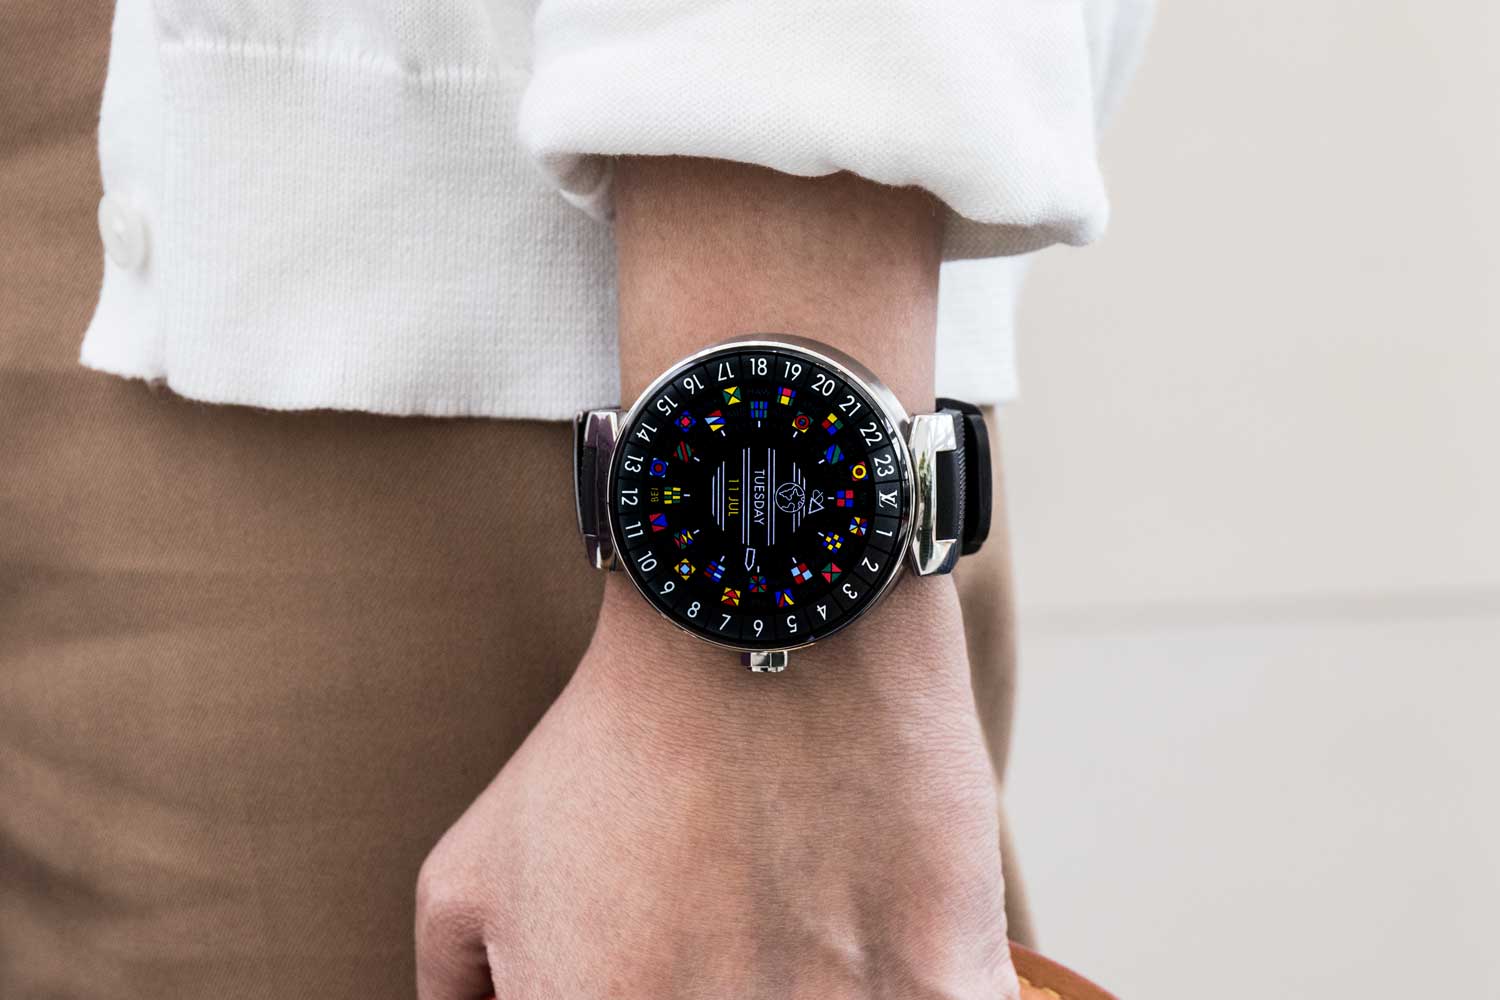 Reloj Louis Vuitton para caballero en acero inoxidable correa piel